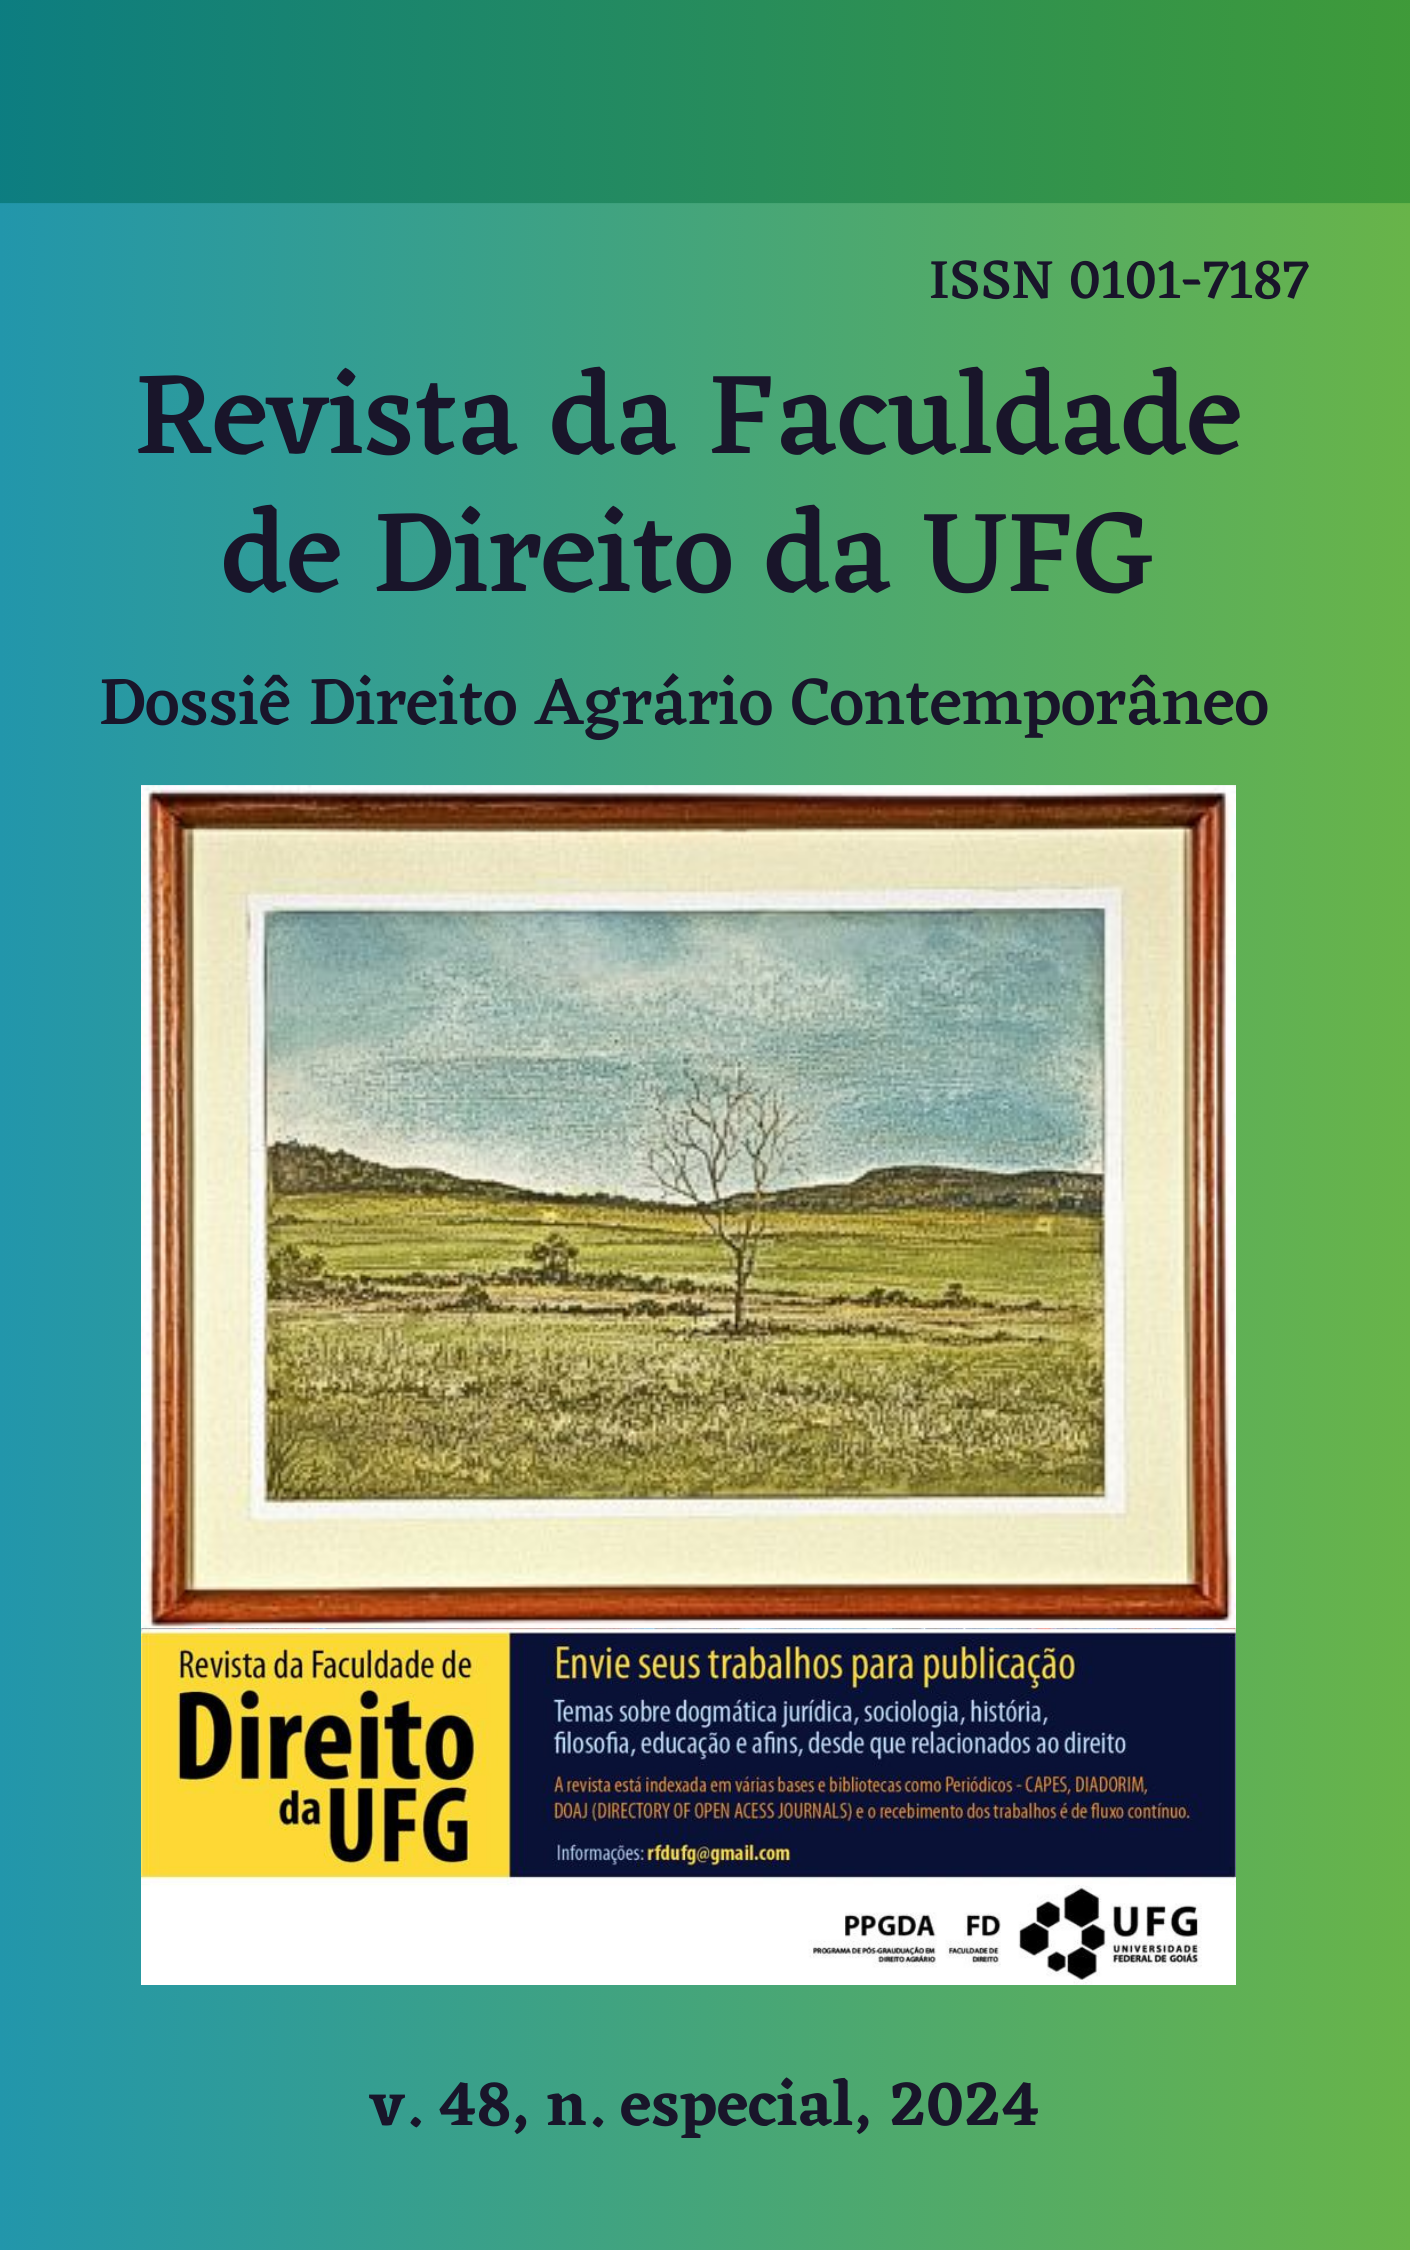 					Afficher Vol. 48 No. especial (2024): REVISTA DA FACULDADE DE DIREITO DA UFG - Dossiê Direito Agrário Contemporâneo
				